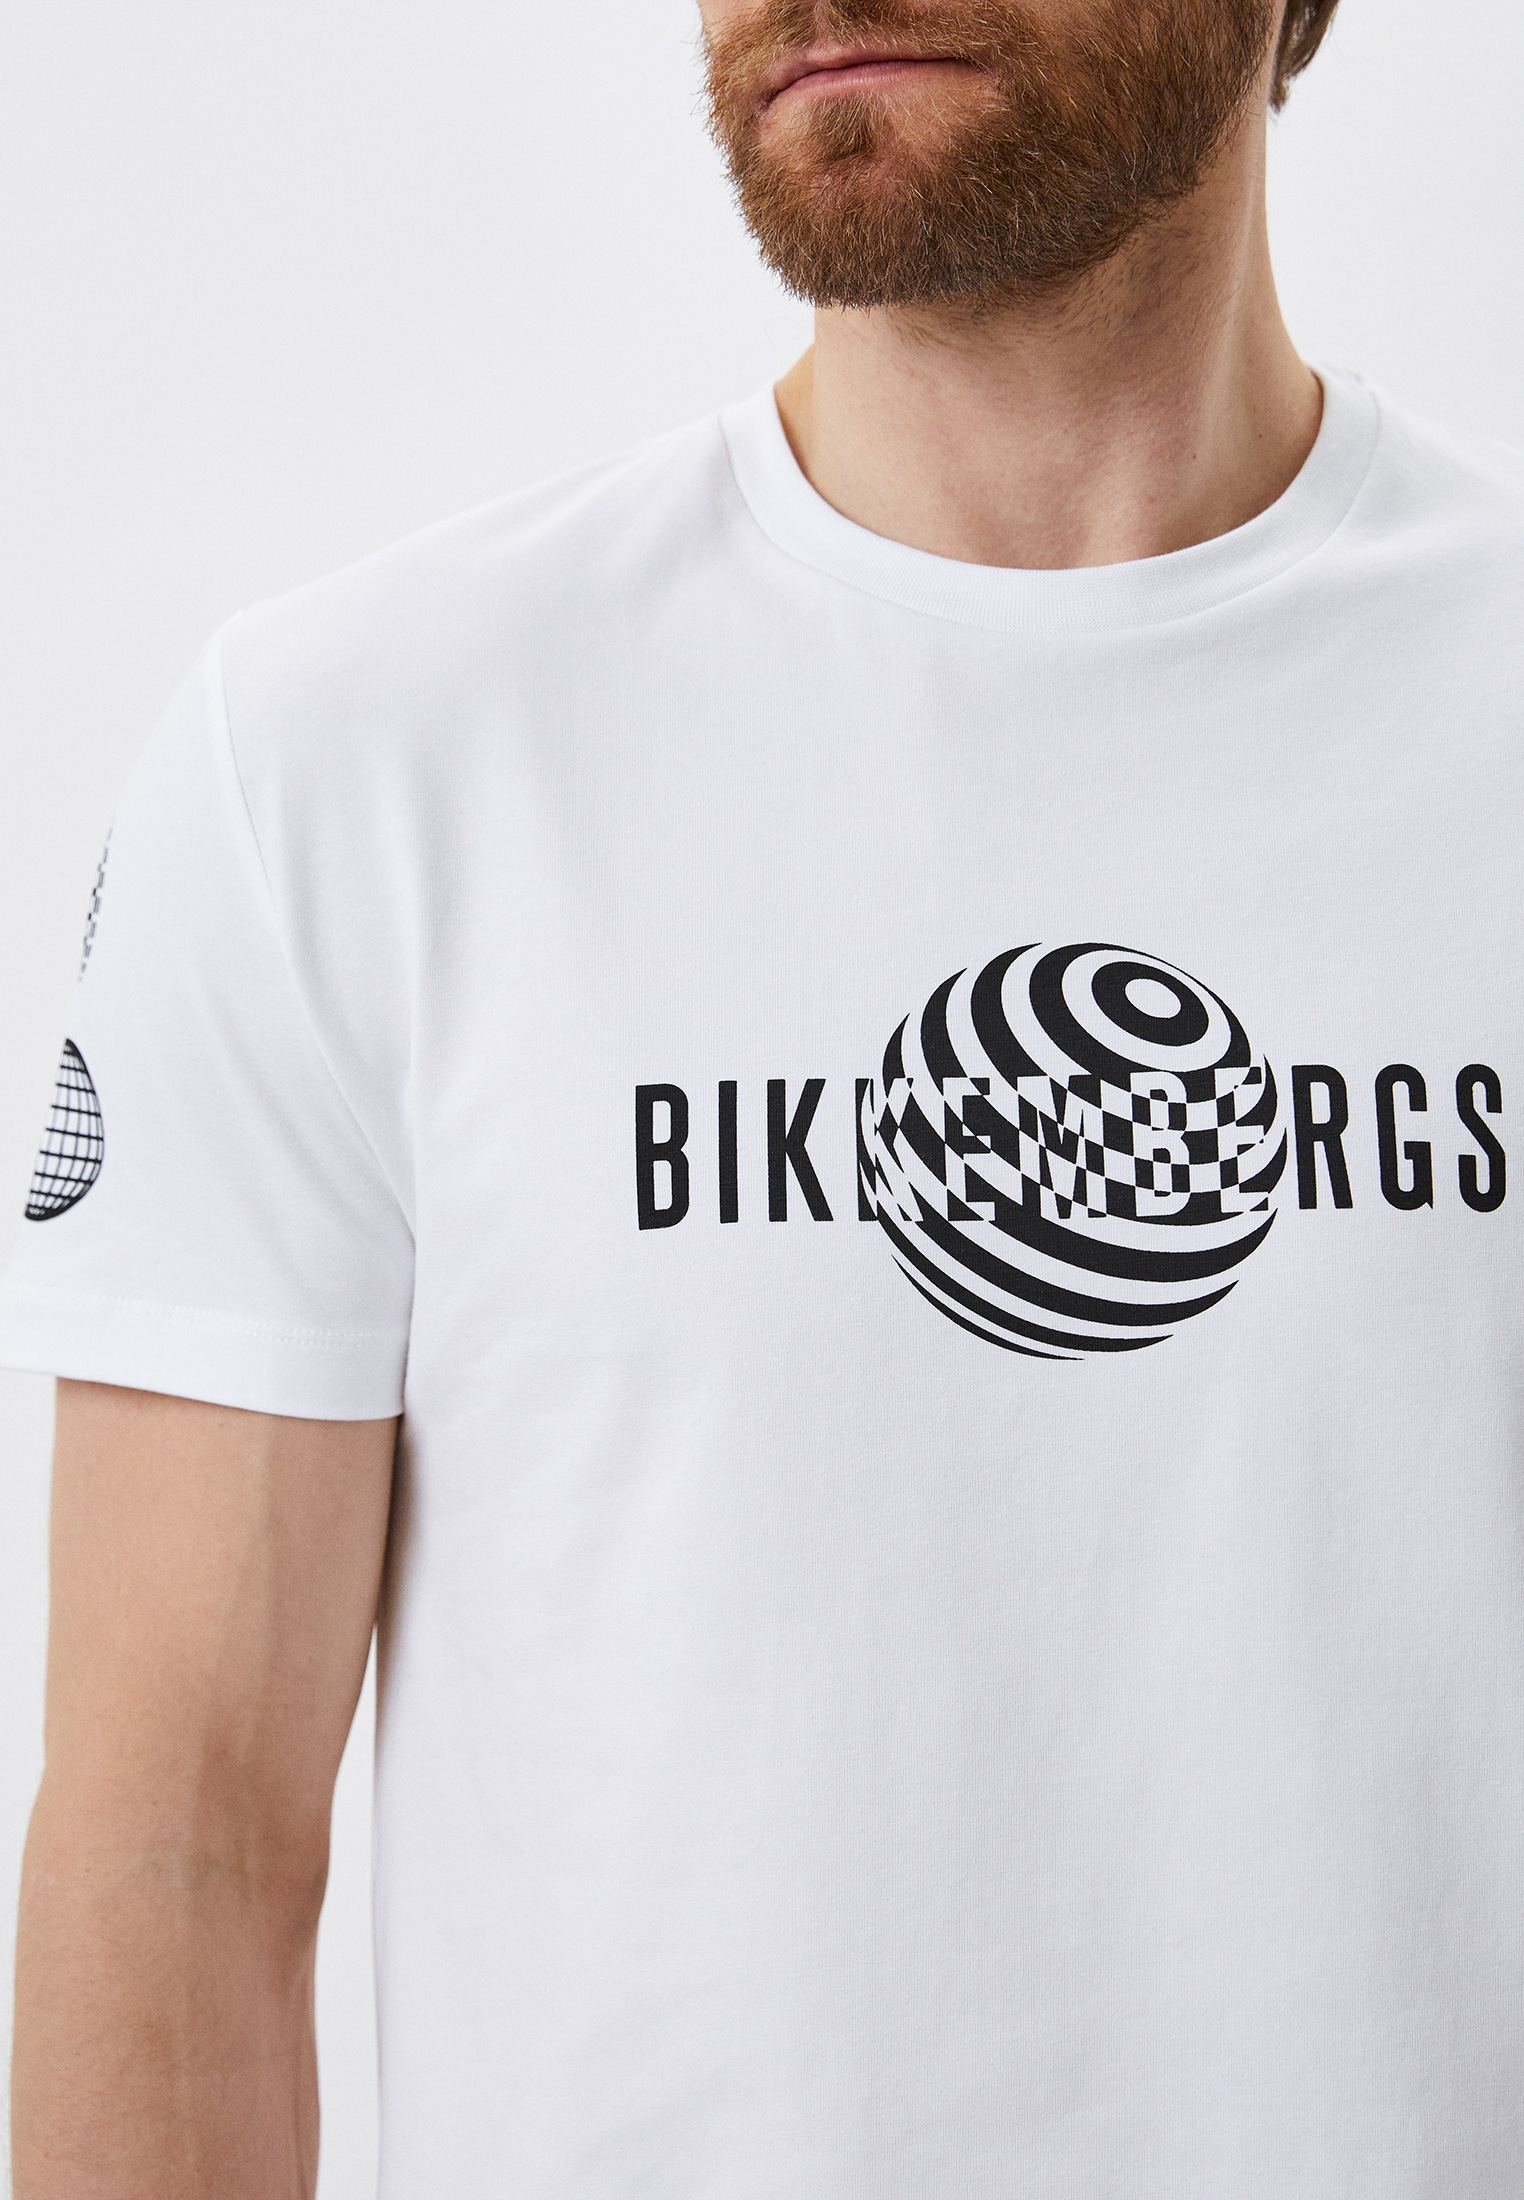 Мужская футболка Bikkembergs (Биккембергс) C 4 101 1H E 2359: изображение 4